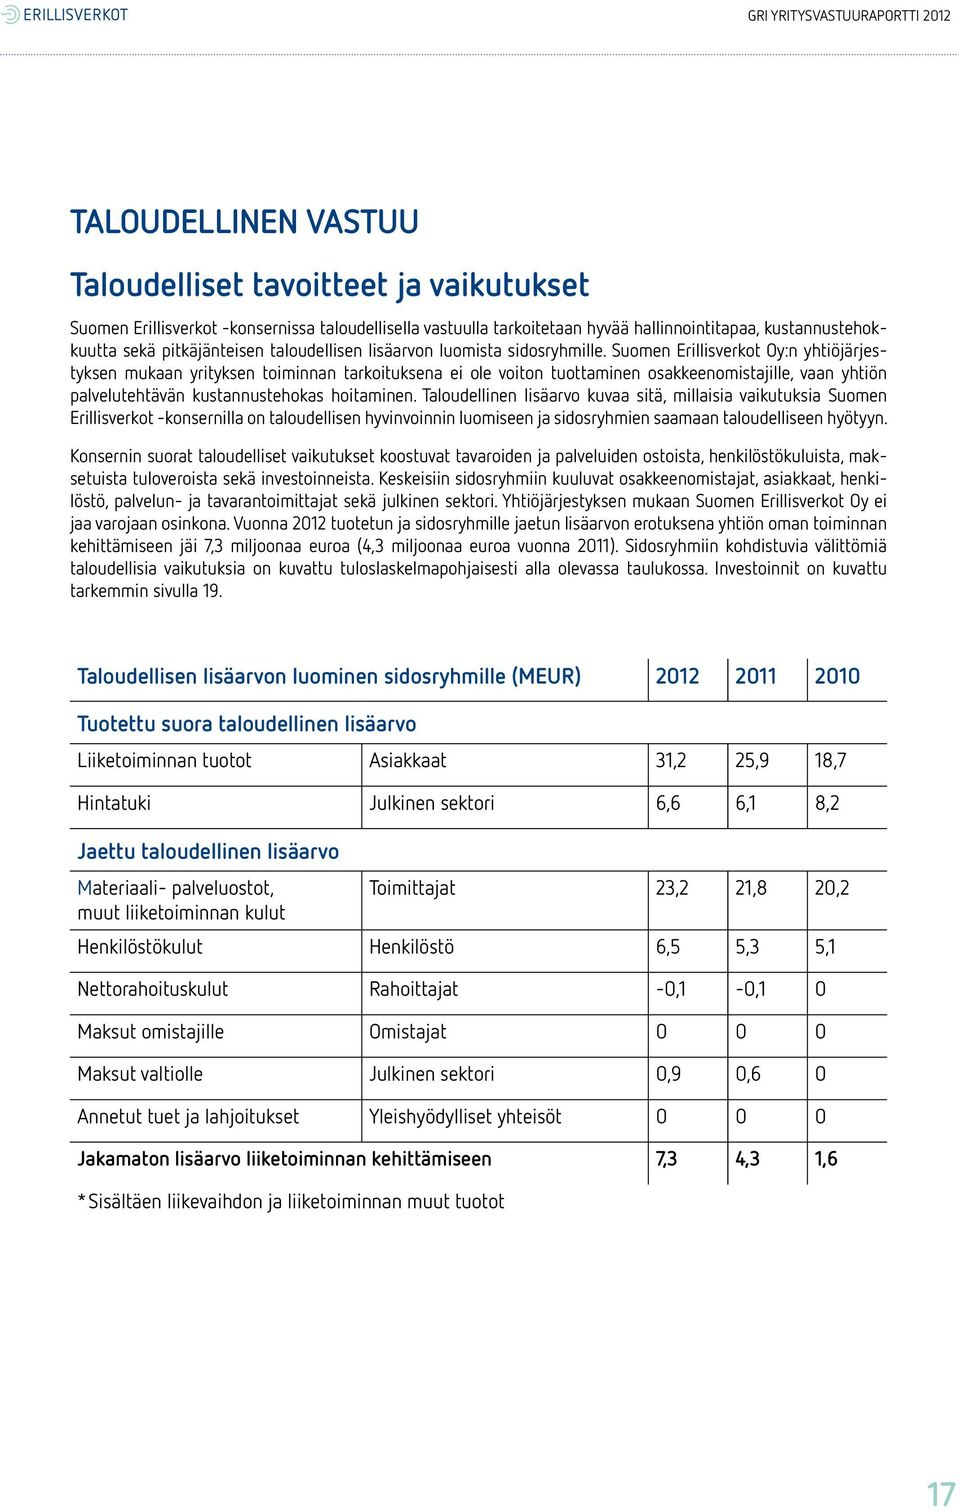 Suomen Erillisverkot Oy:n yhtiöjärjestyksen mukaan yrityksen toiminnan tarkoituksena ei ole voiton tuottaminen osakkeenomistajille, vaan yhtiön palvelutehtävän kustannustehokas hoitaminen.